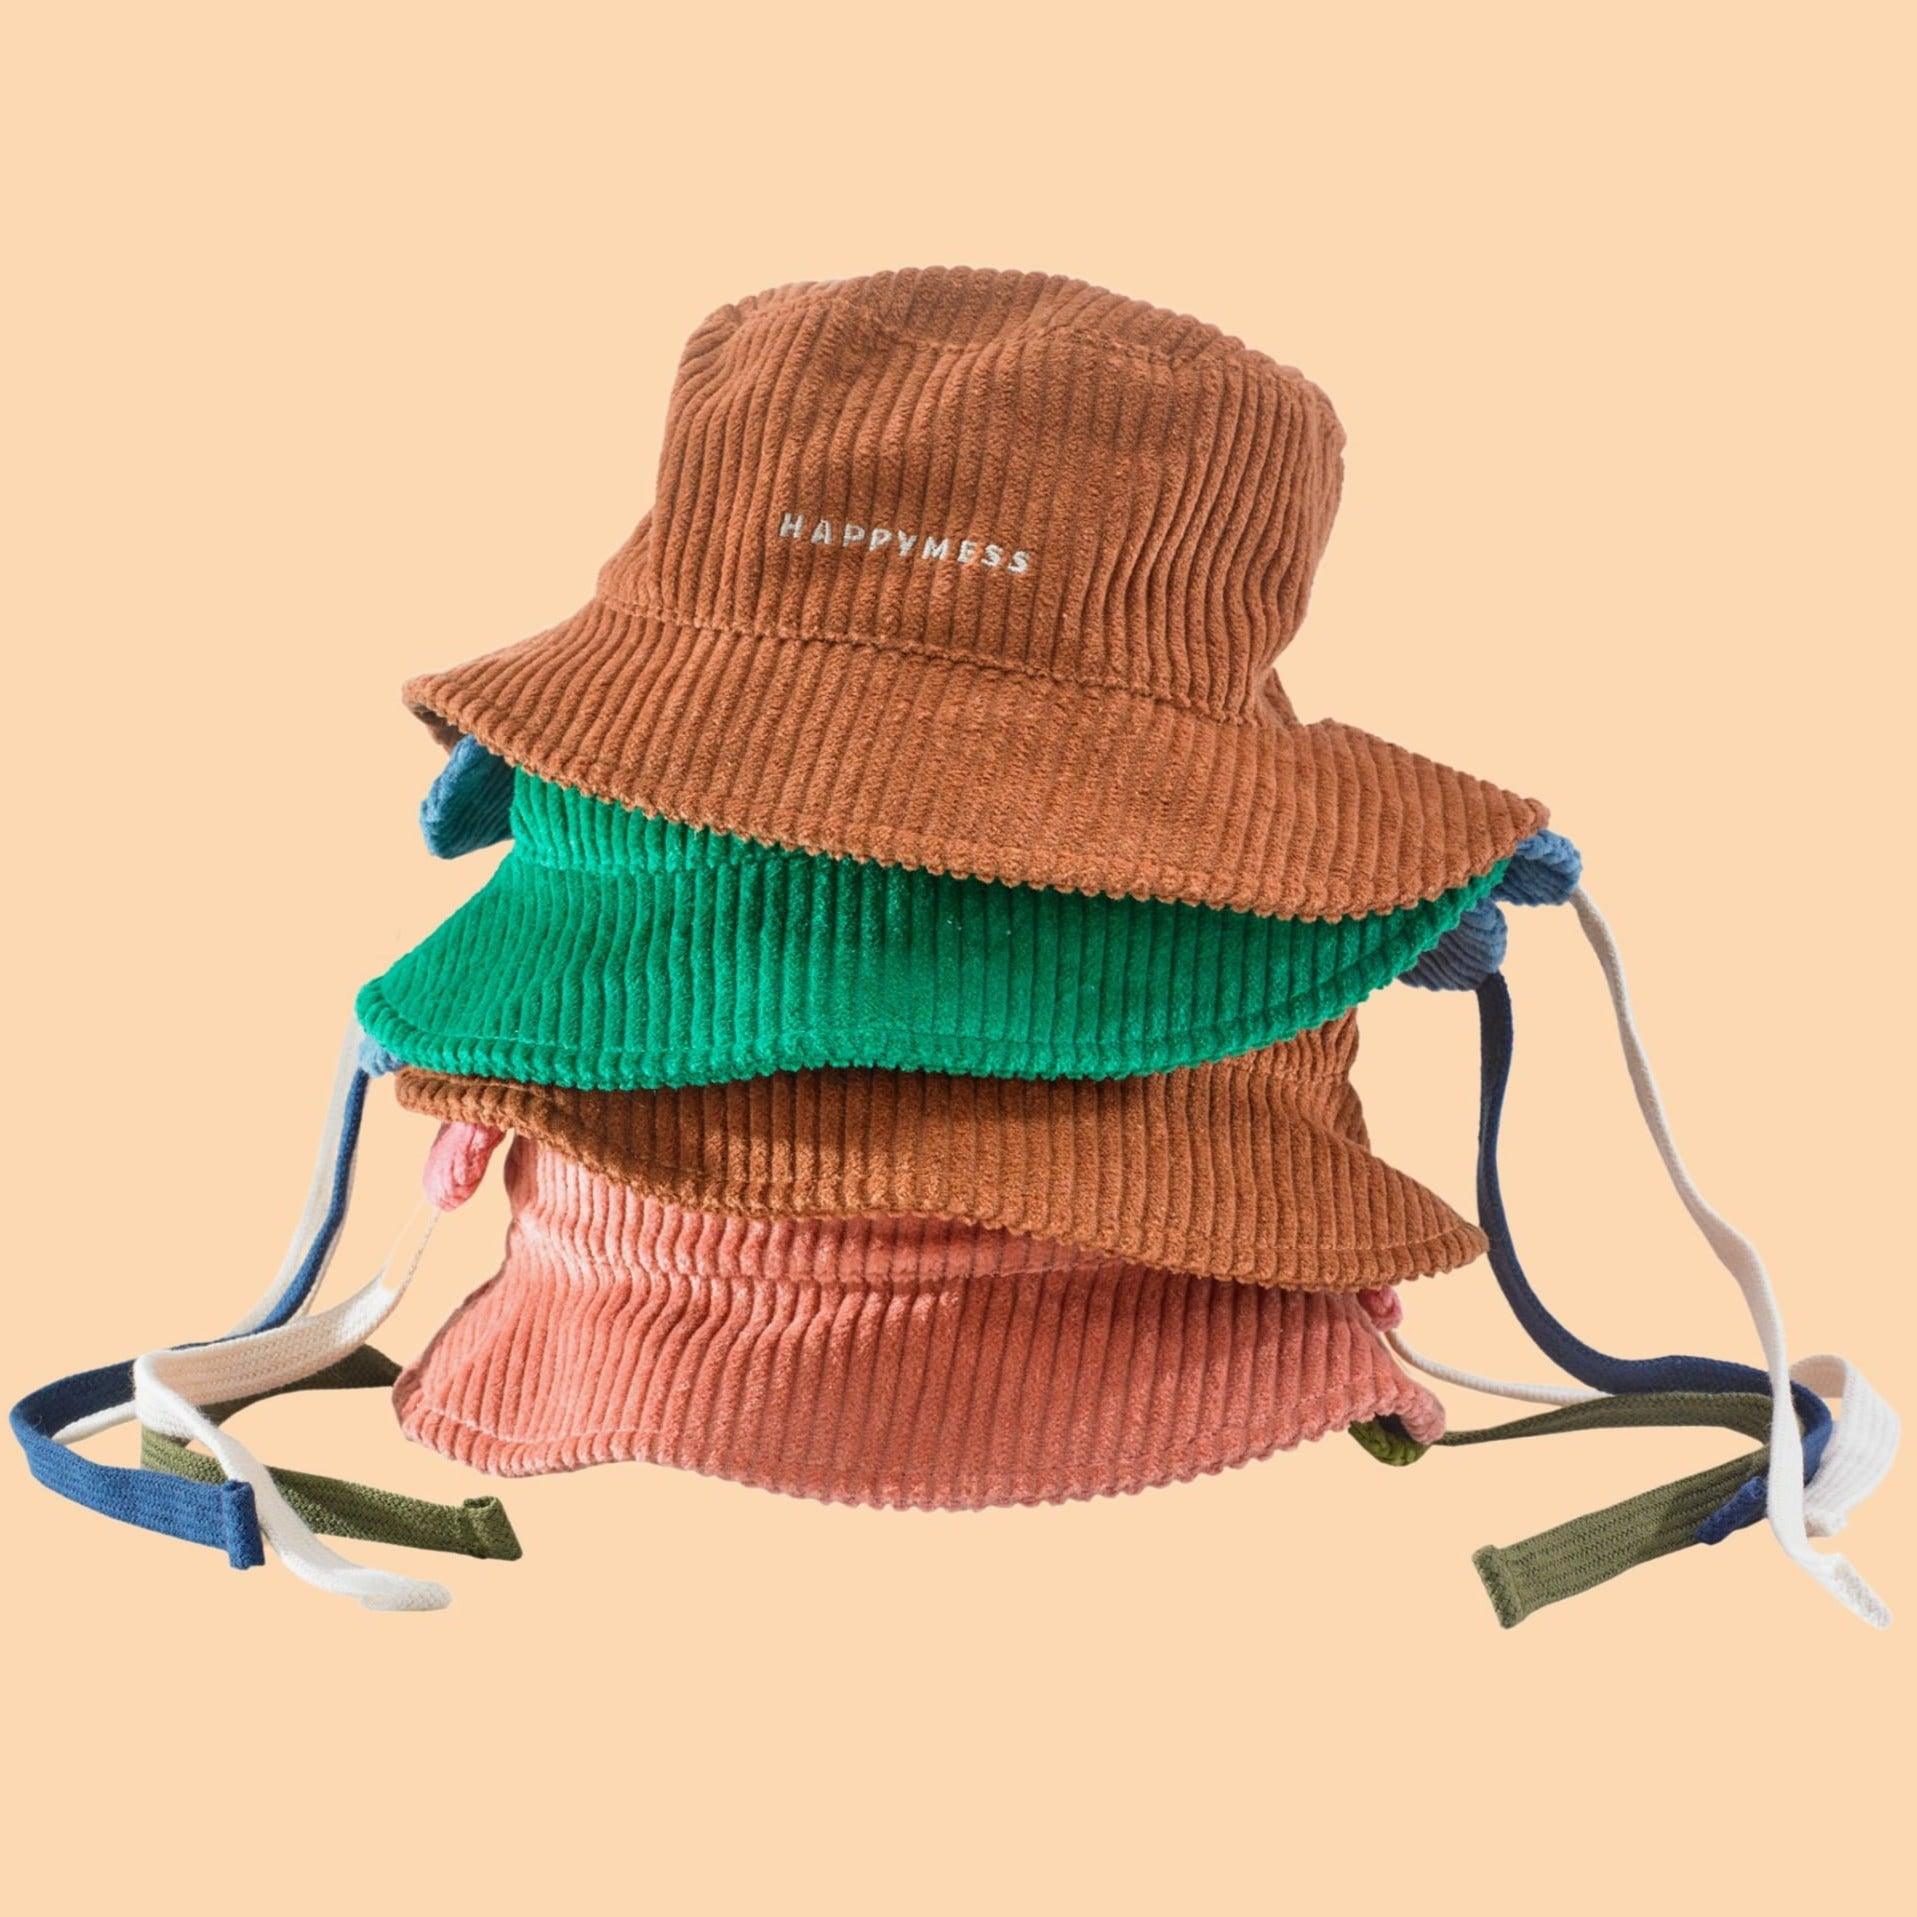 Happymess: kapelusz sztruksowy Bucket Hat - Noski Noski